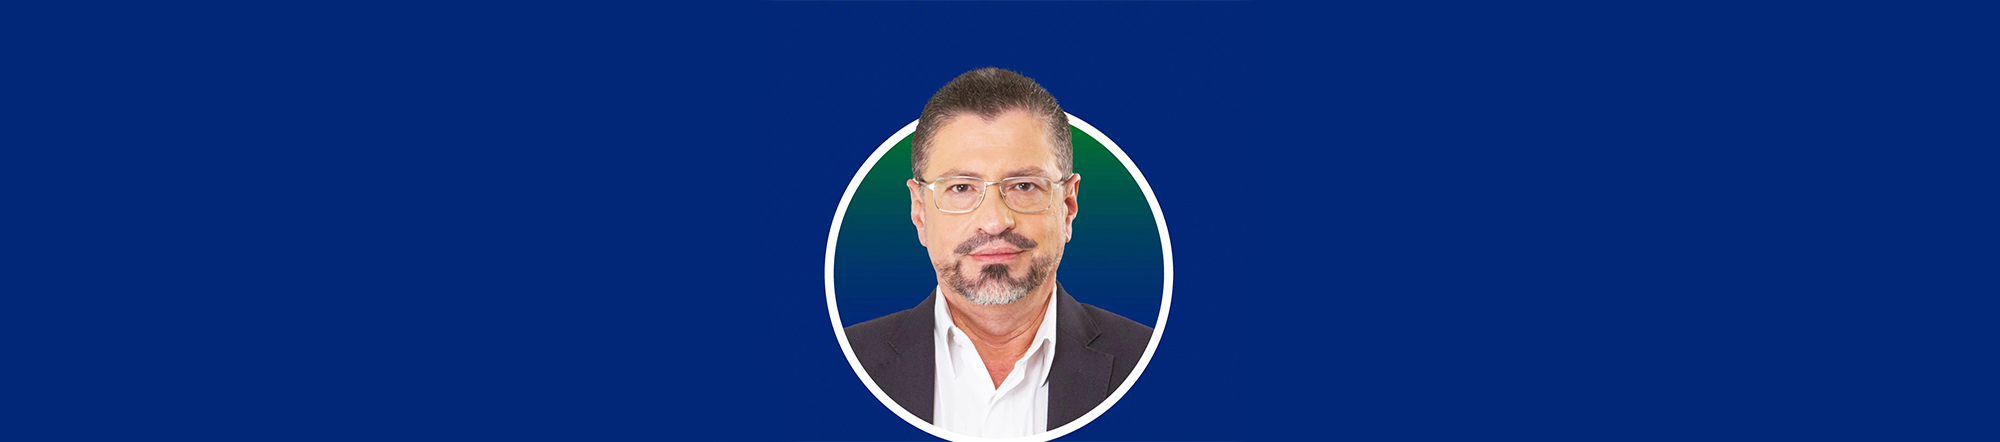 Rodrigo Chaves es el nuevo presidente de Costa Rica